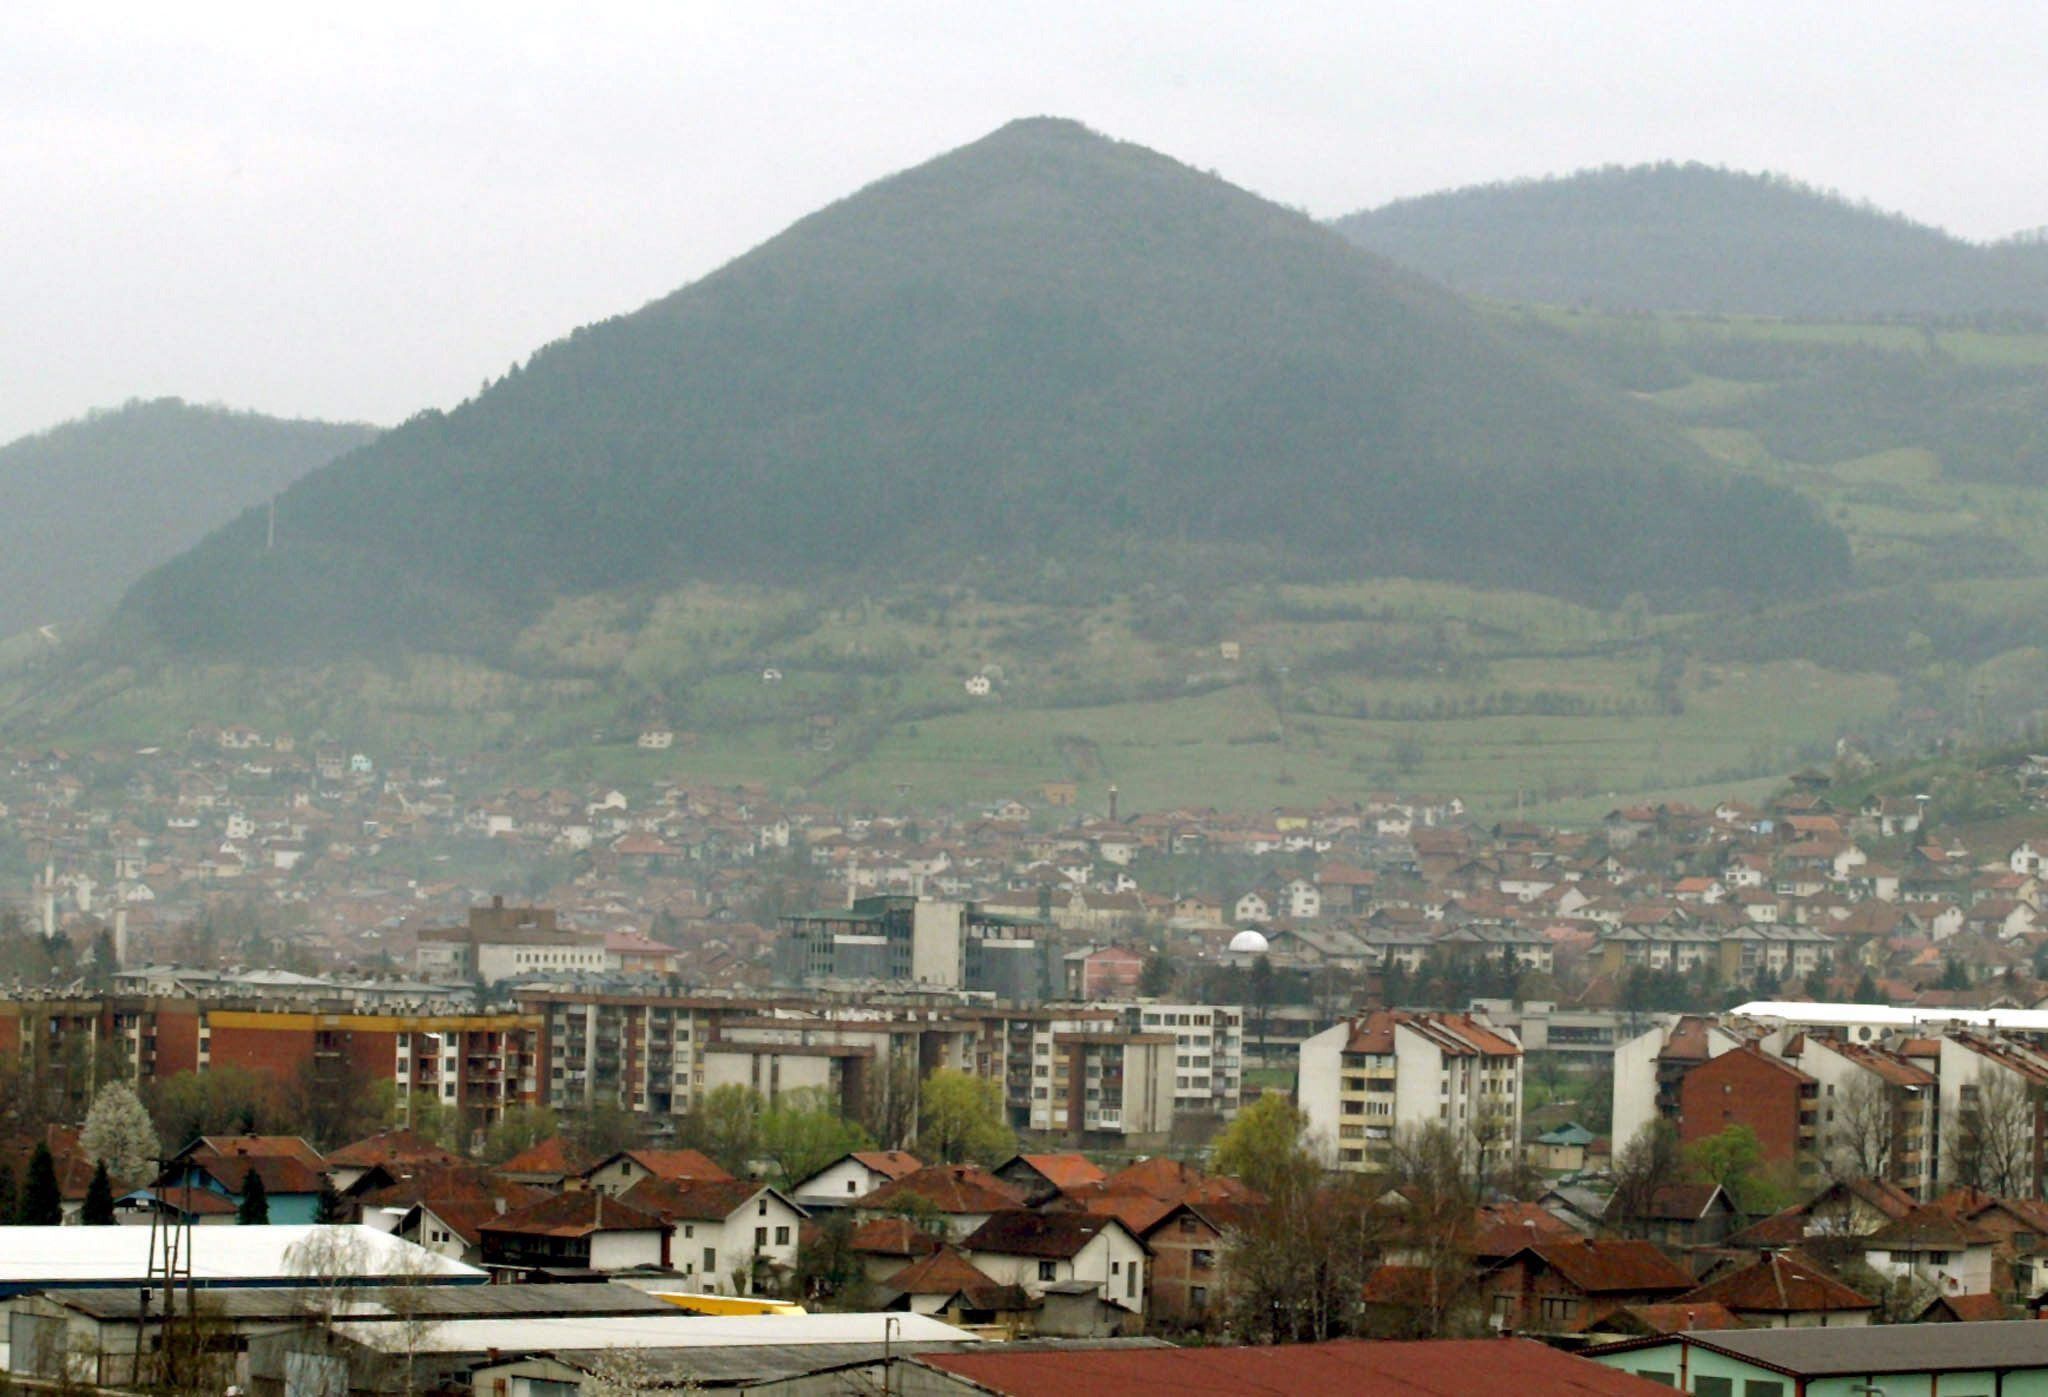 Bei den Pyramiden in Bosnien handelt es sich um mehrere "Pyramiden" - genauer gesagt um Berge, die für Pyramiden gehalten werden. Der Berg Visočica gilt als "Pyramide der Sonne", die Plješevica als "Pyramide des Mondes" und eine dritte Pyramide als die "Pyramide des bosnischen Drachen".